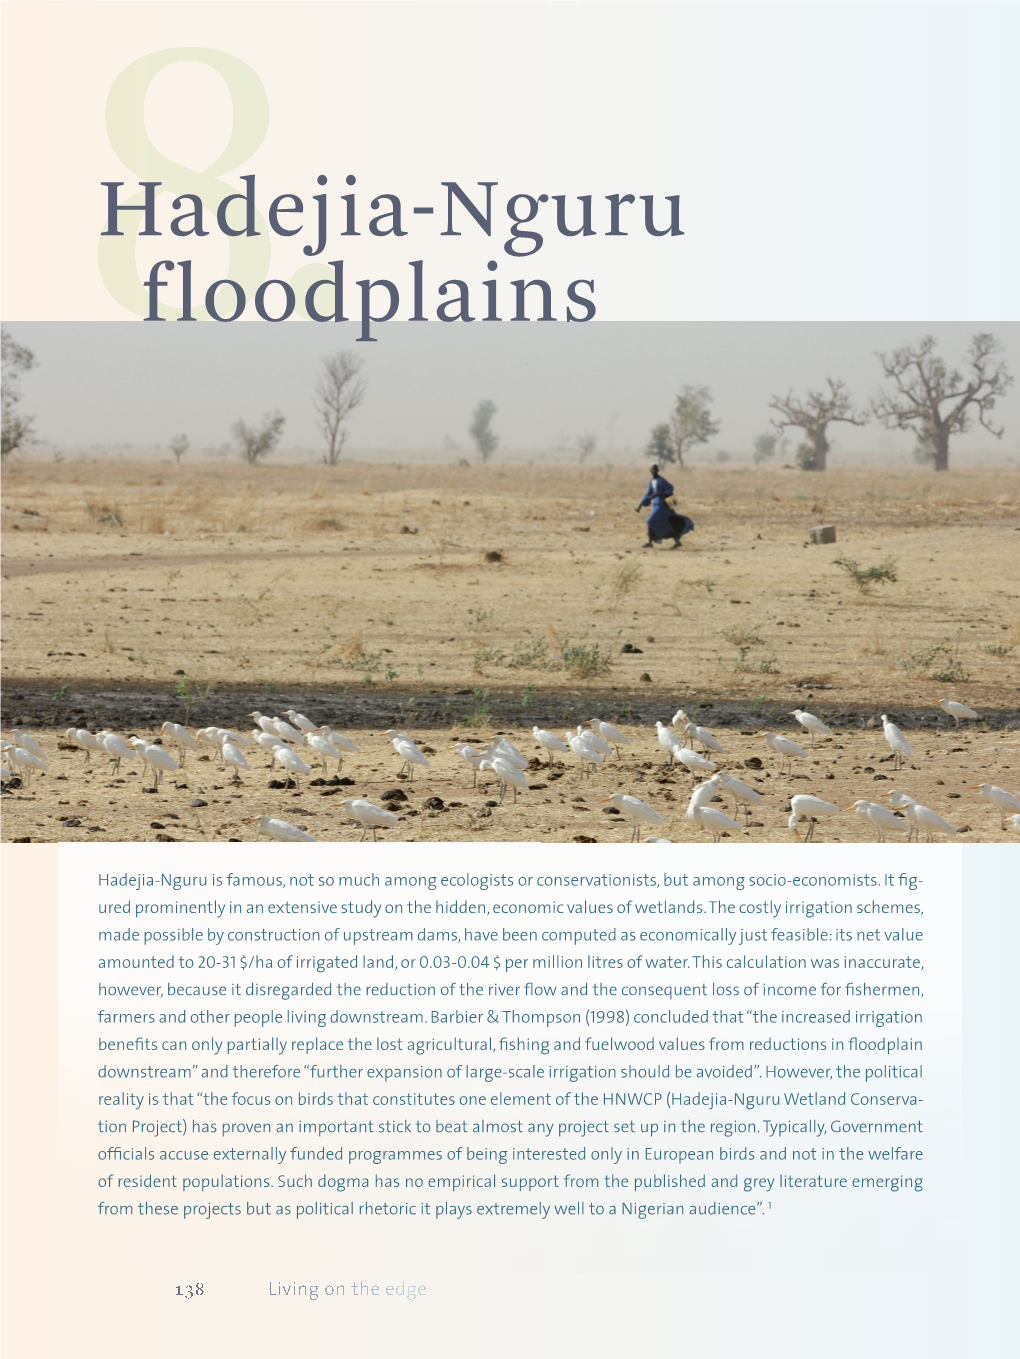 Hadejia-Nguru Floodplains Are Situated in the Komadugu-Yobe Basin in NE Nigeria, Along the Fringes of the Hadejia and Jama’Are NIGERIA Hadejia R Rivers (Fig